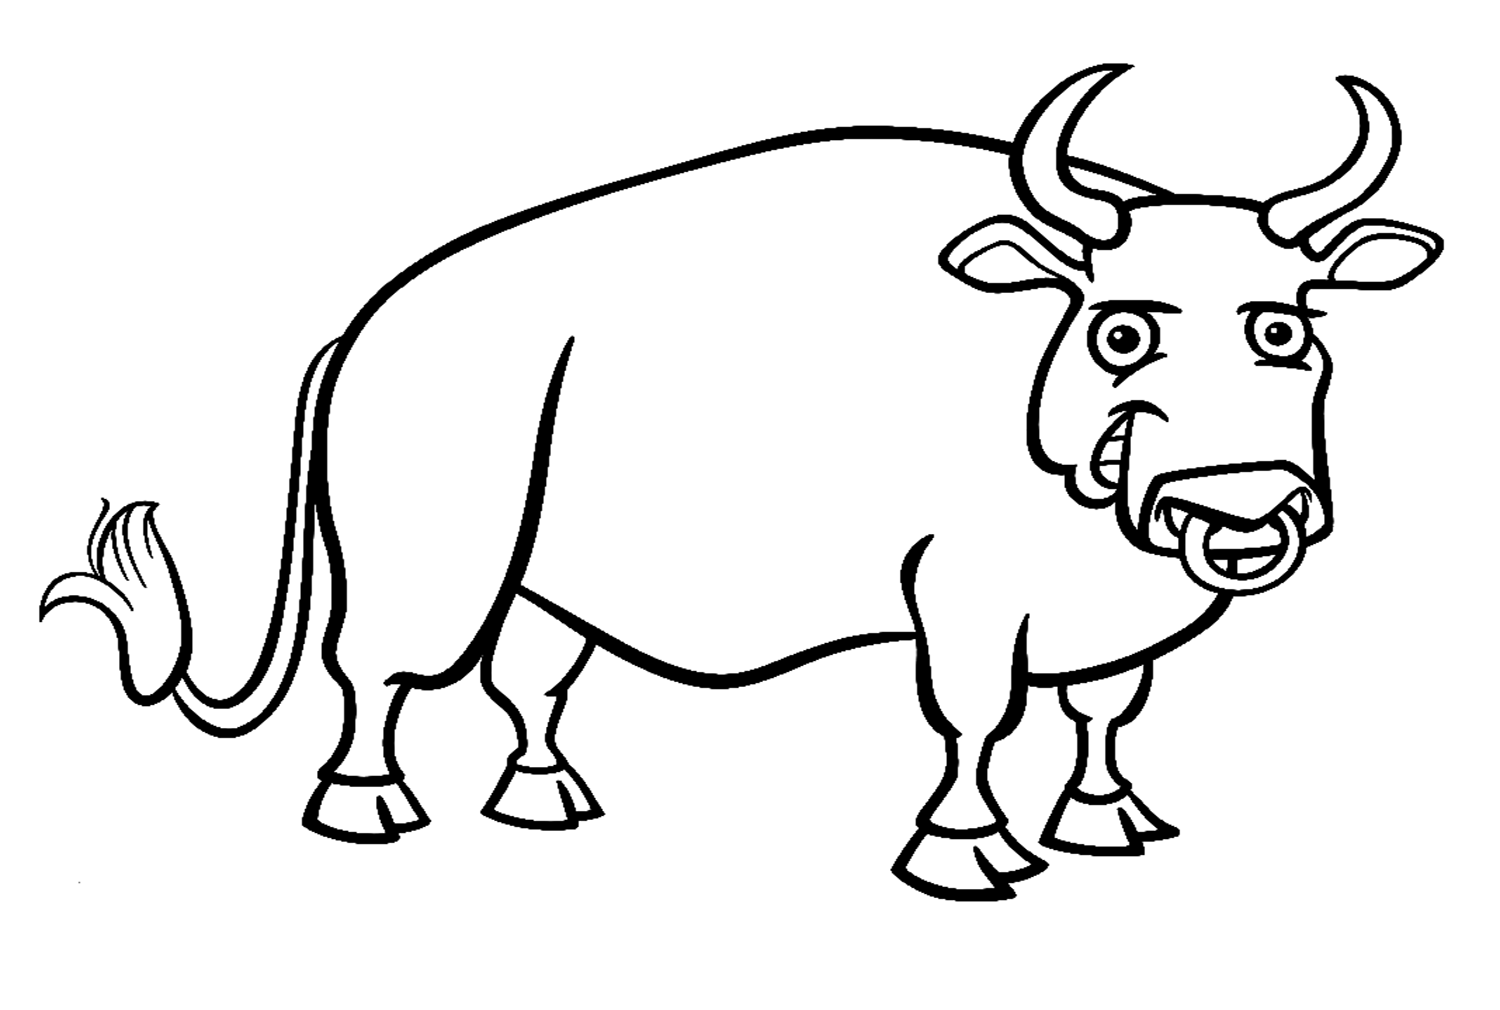 Cartoonstier van Bull